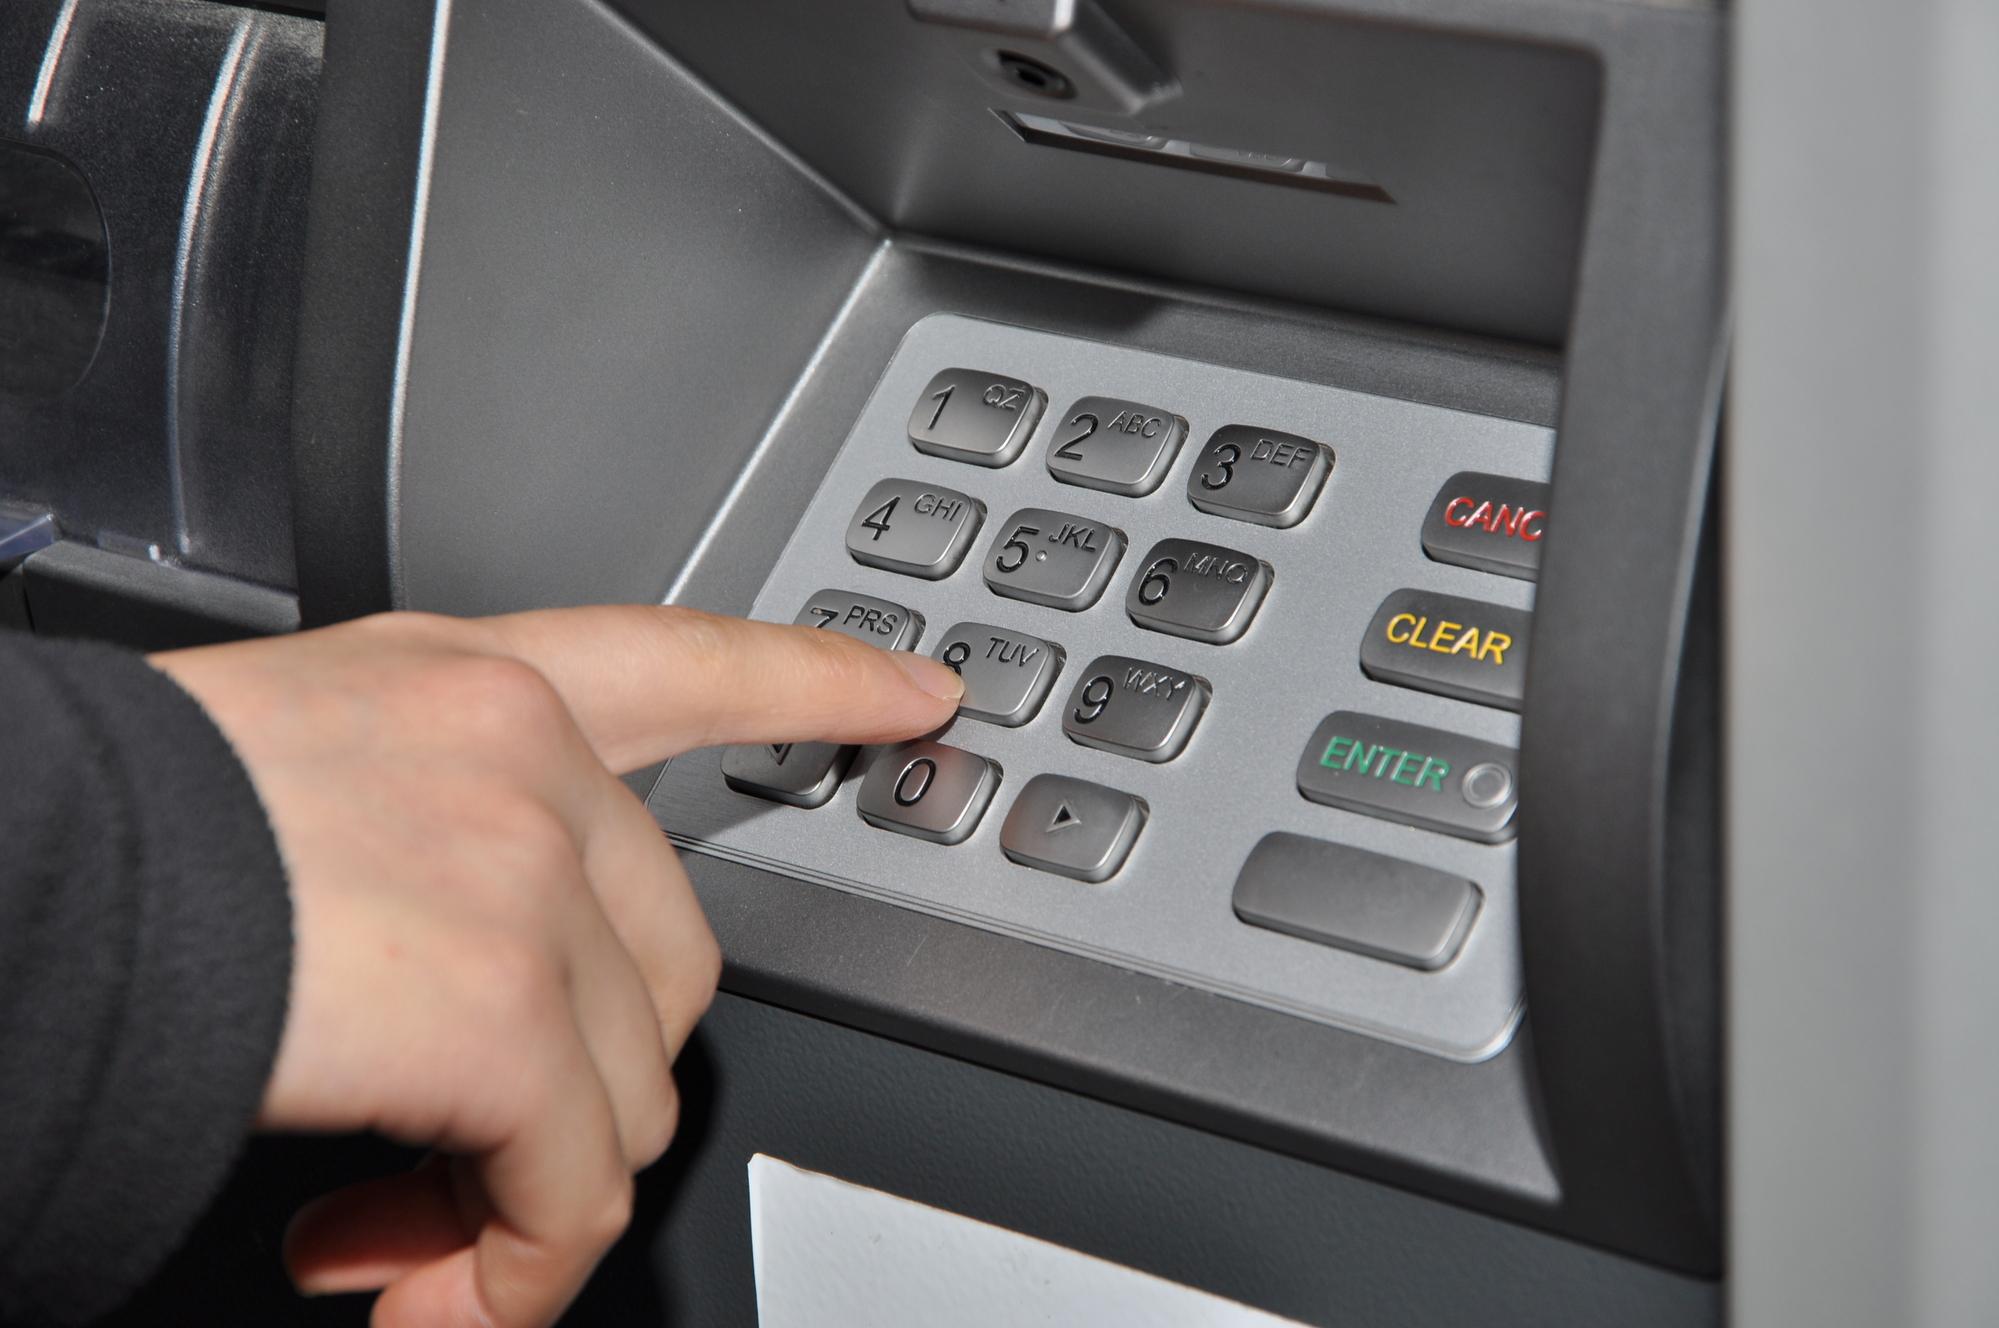 PIN-Eingabe am Geldautomaten